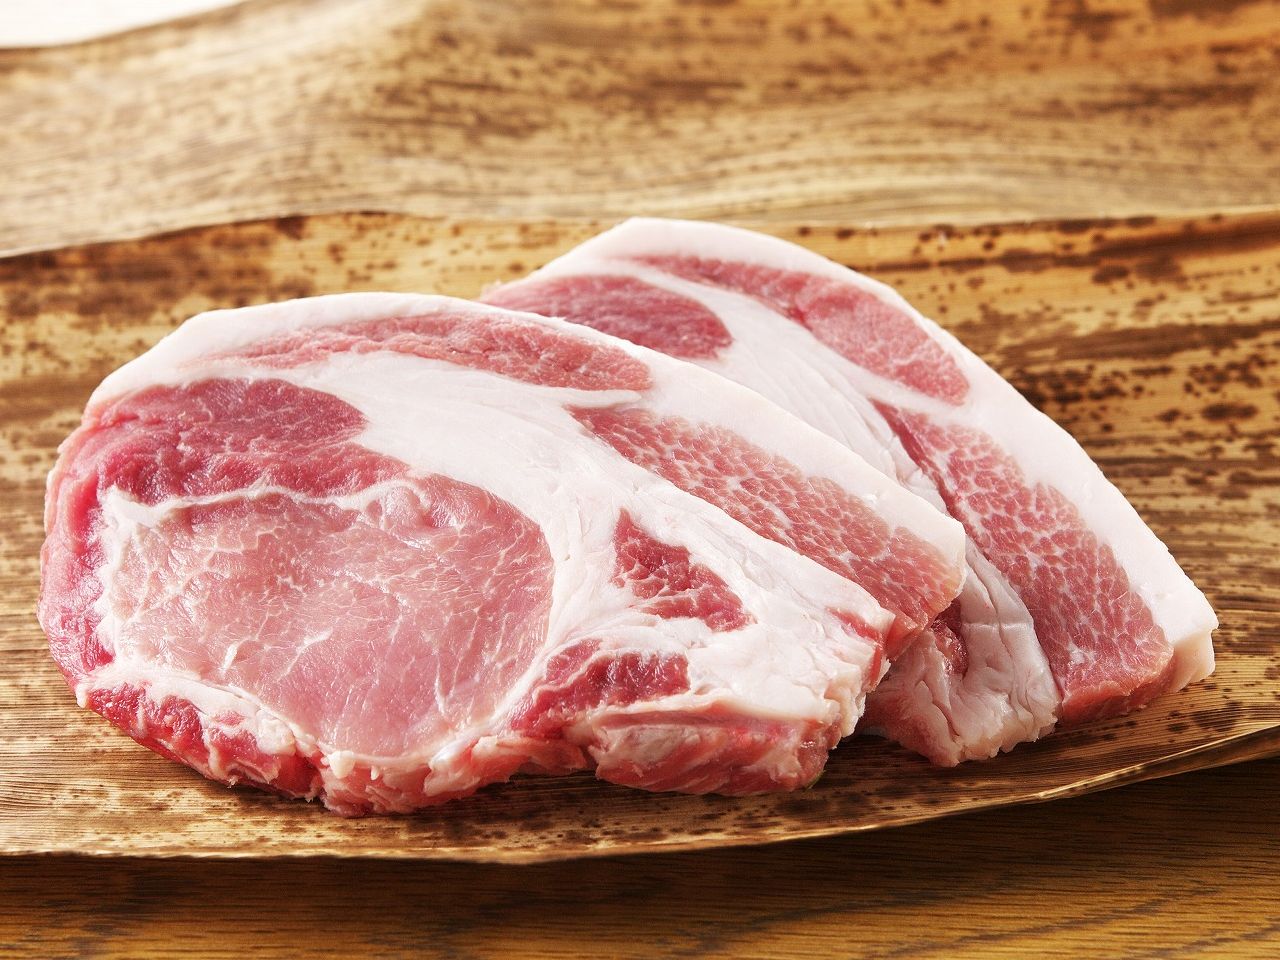 米澤豚一番育ち ロース肉 (トンカツ・トンテキ用) / 美味しい山形県産のブランド豚 「三元豚」 を使用画像